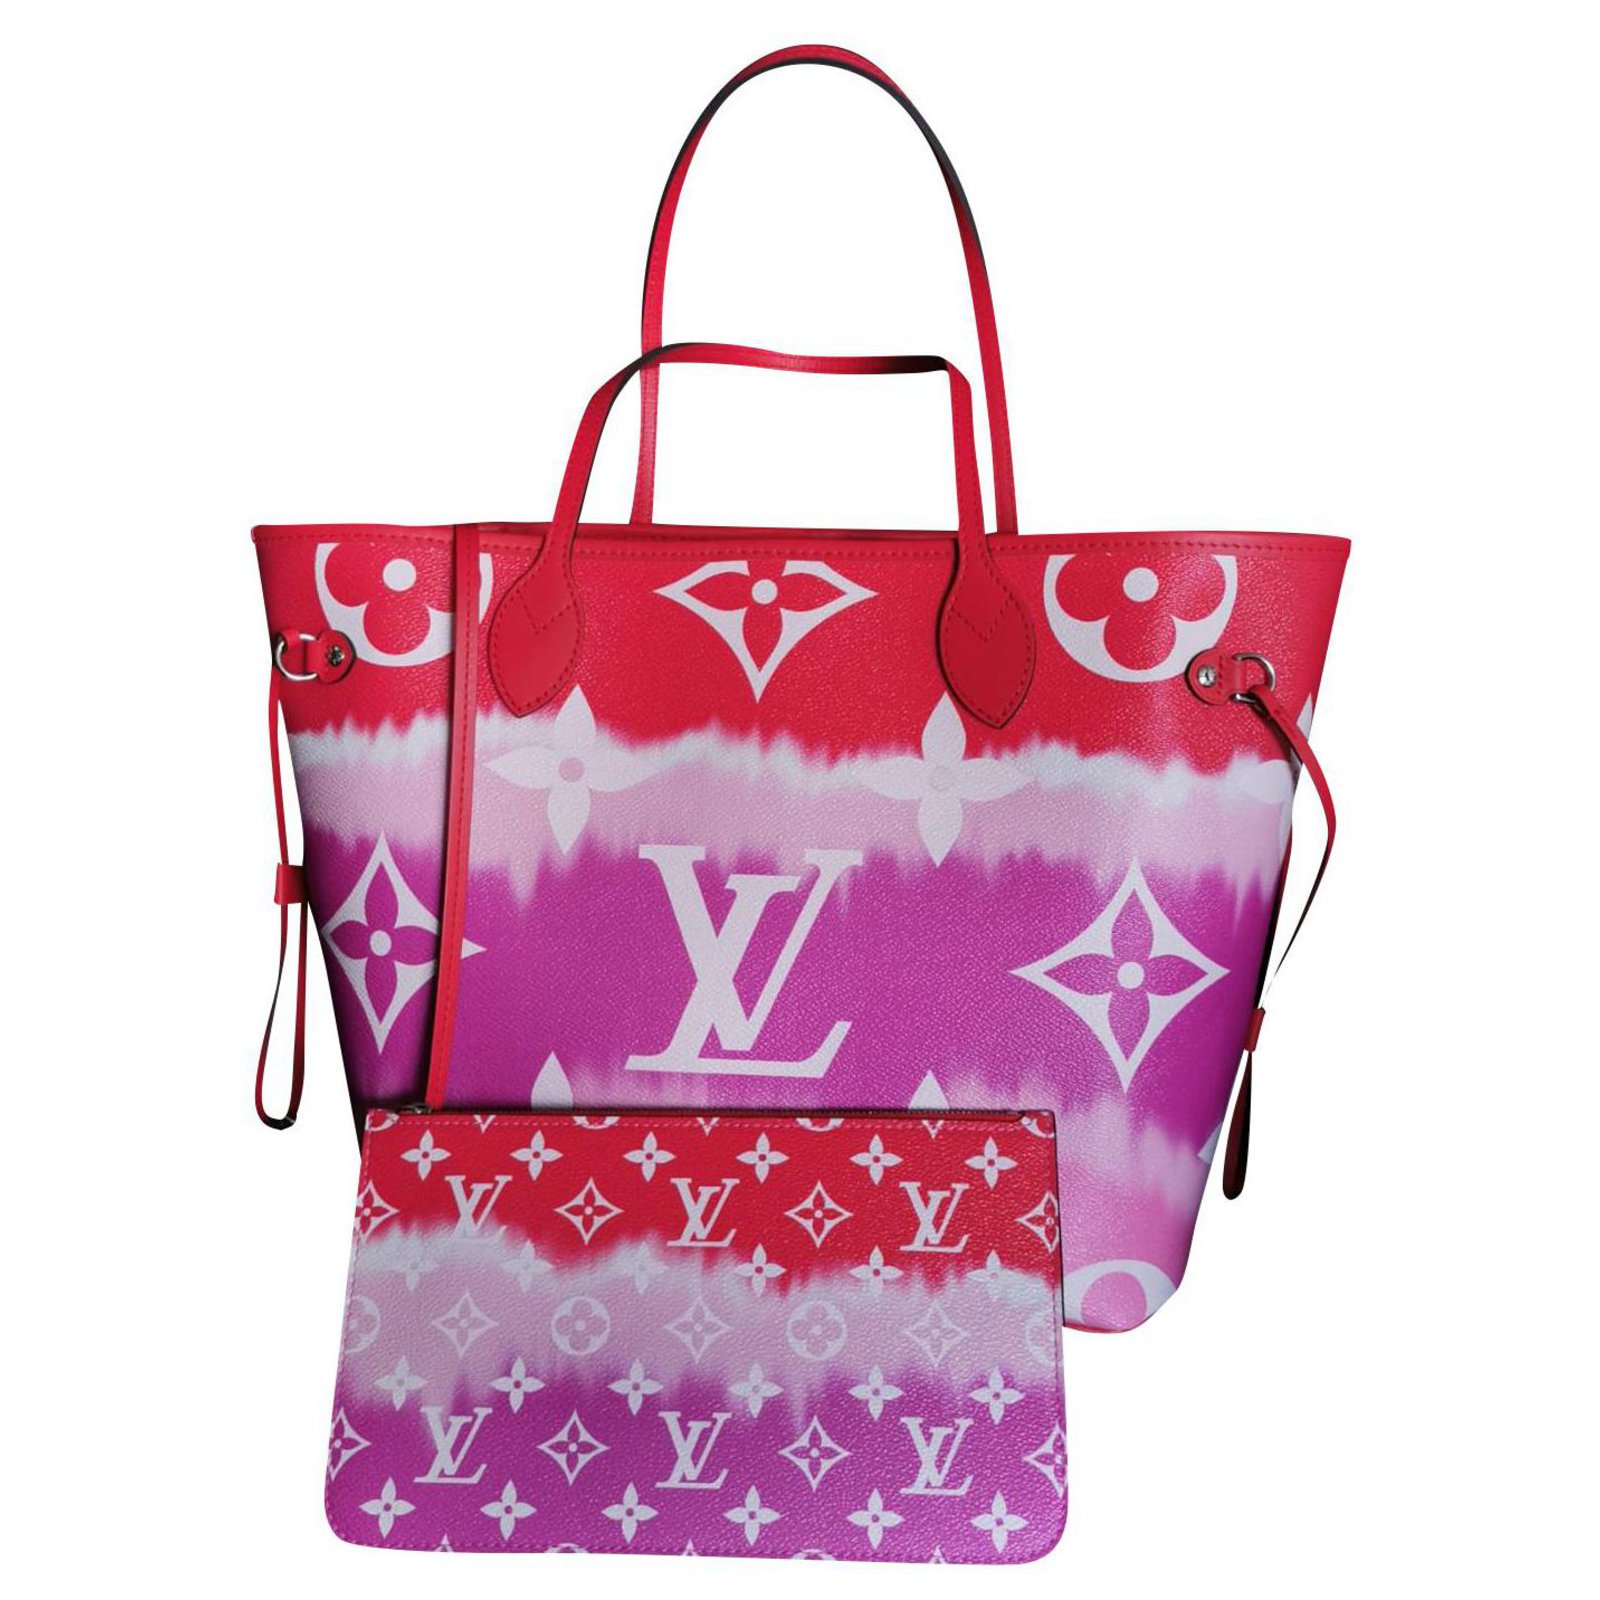 Louis Vuitton Escale Summer 2020 Bag Collection